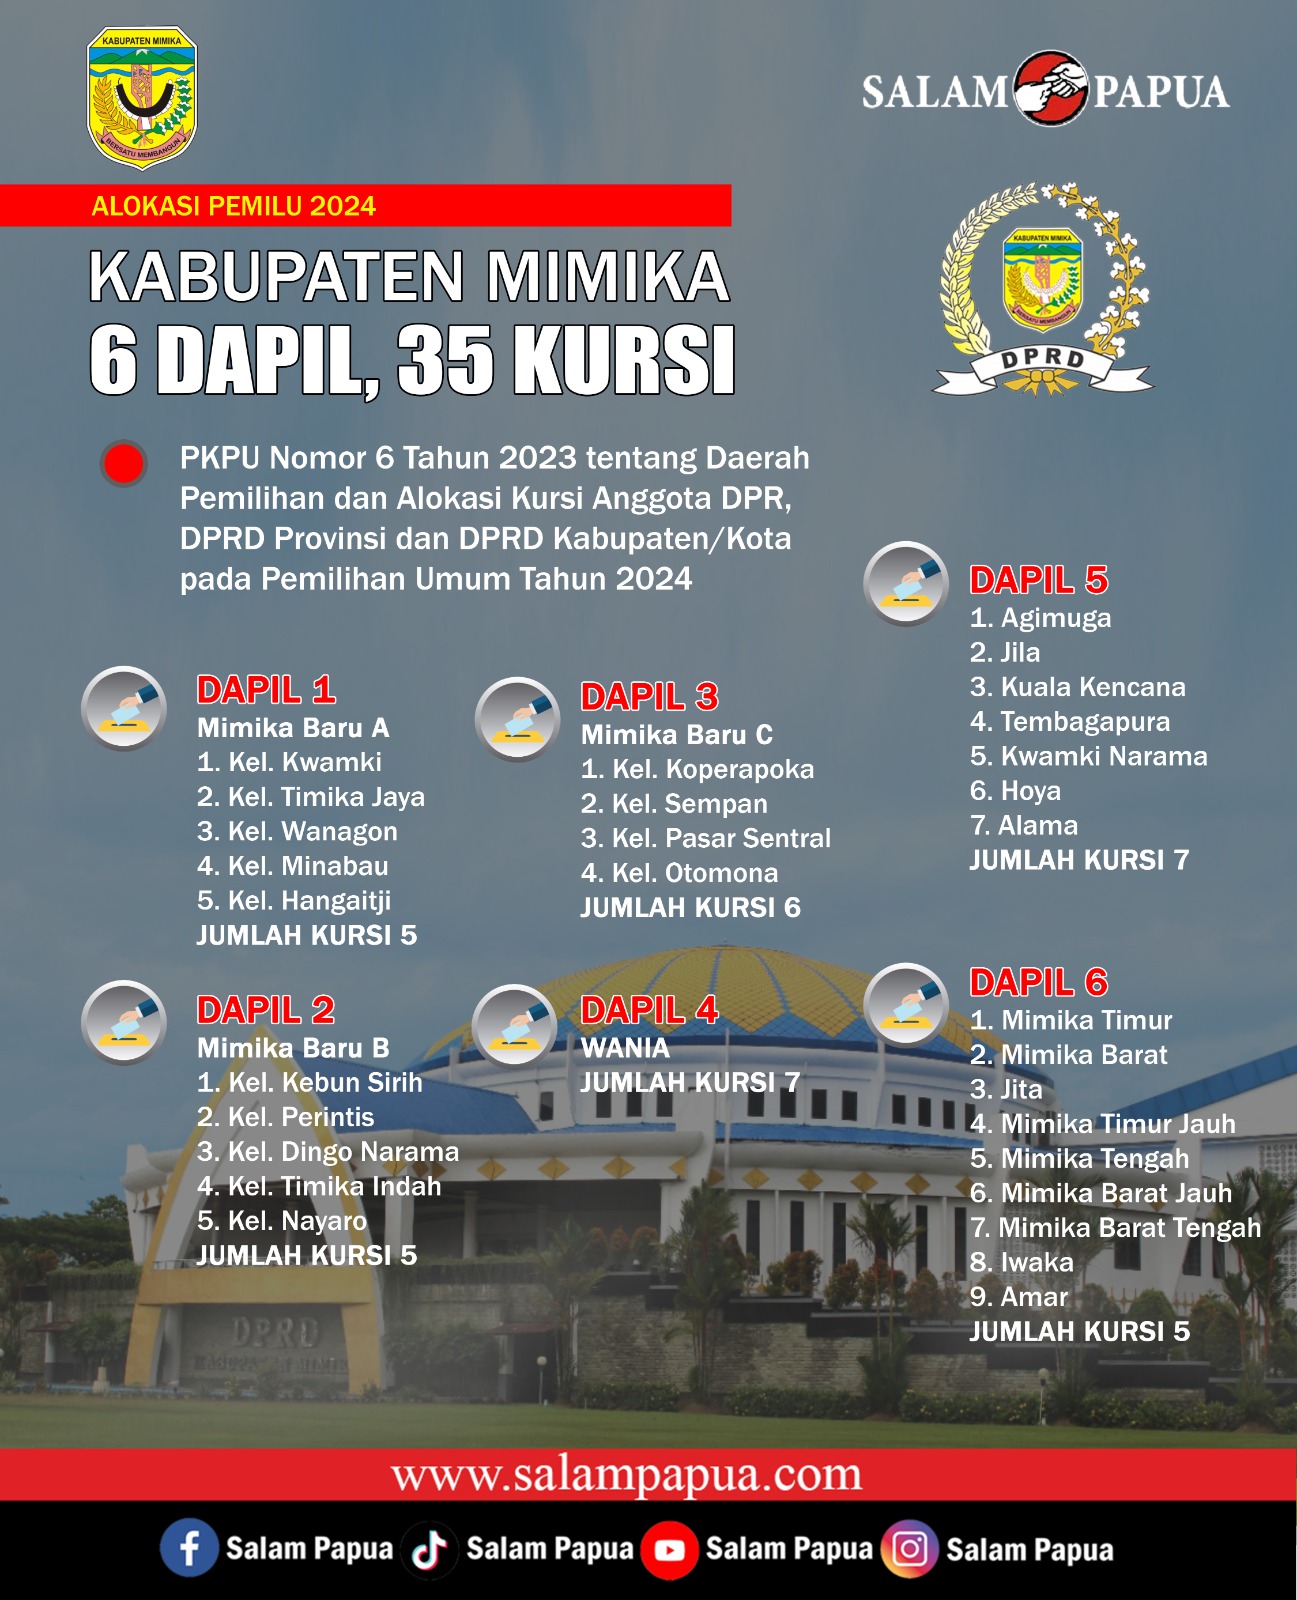 Infografis Dapil di Kabupaten Mimika 2024 (salampapua.com/Apry)